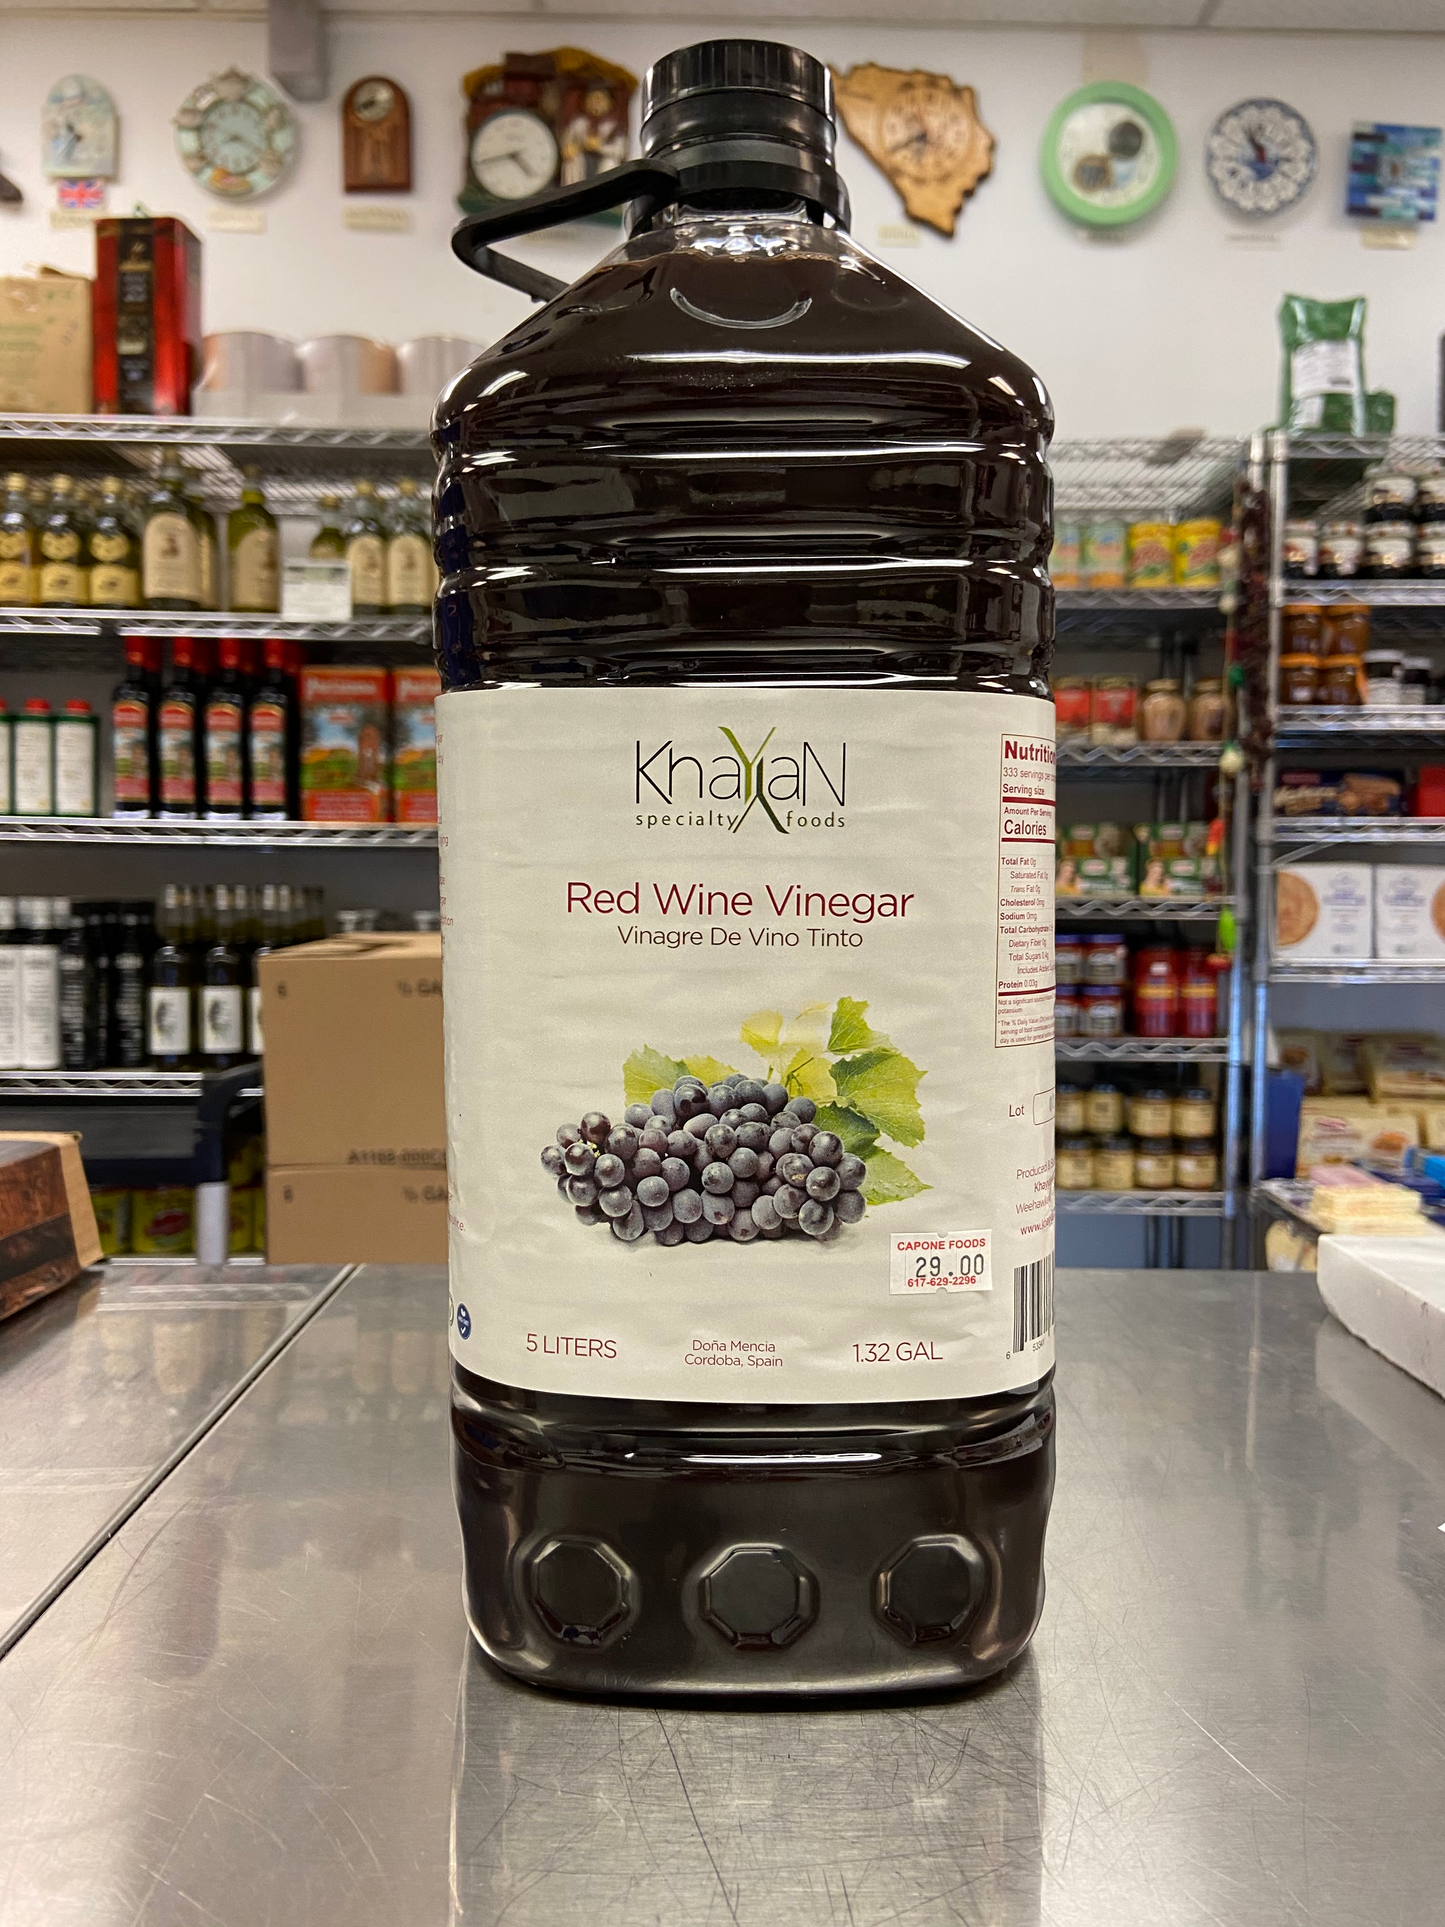 Red Wine Vinegar from Spain 5 liters